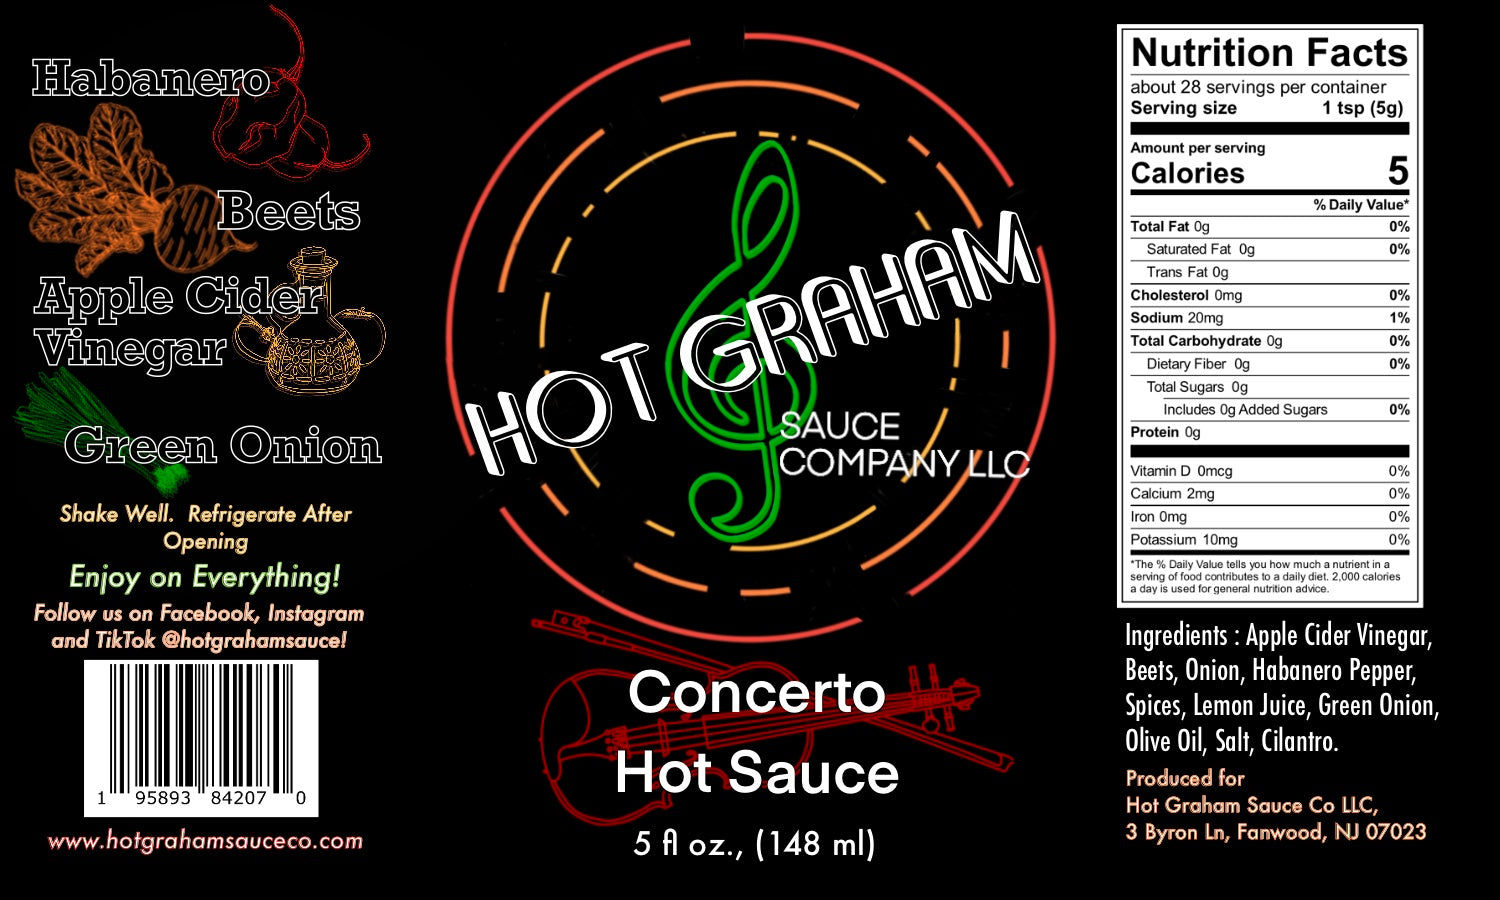 Hot Graham Sauce Quartet